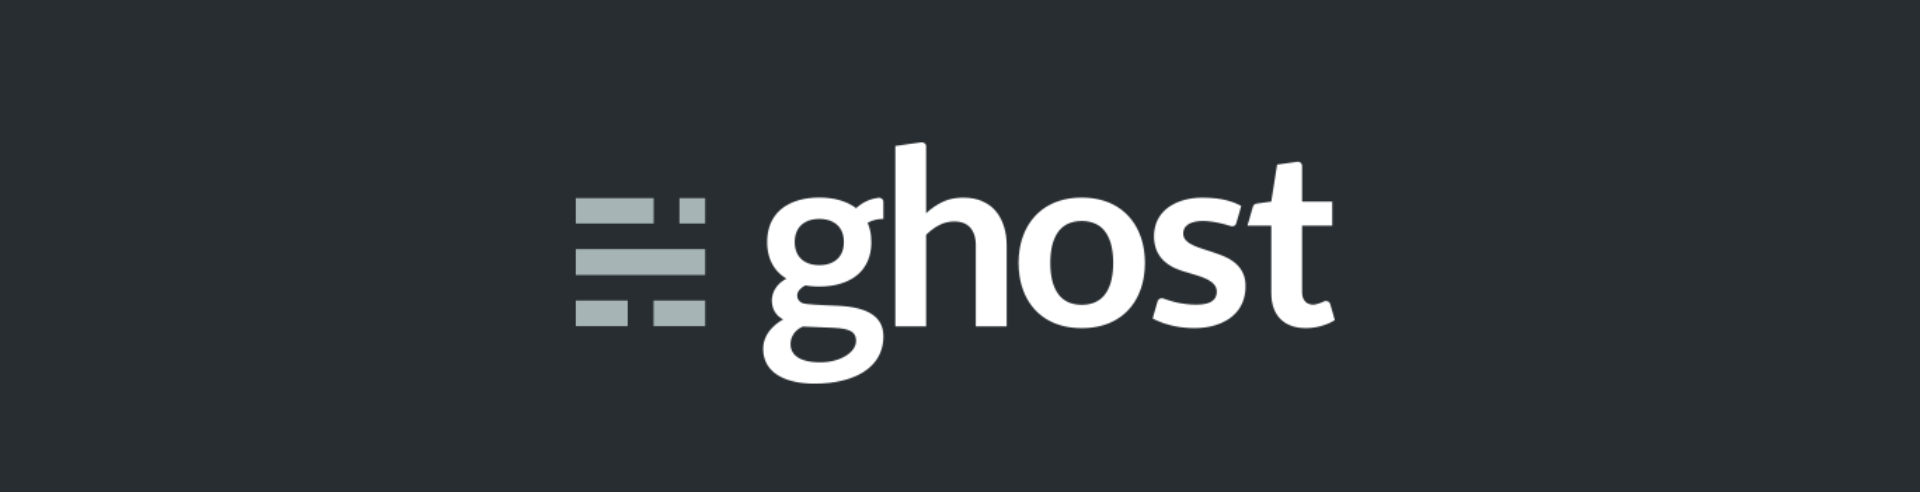 Ghost 2.0 est disponible